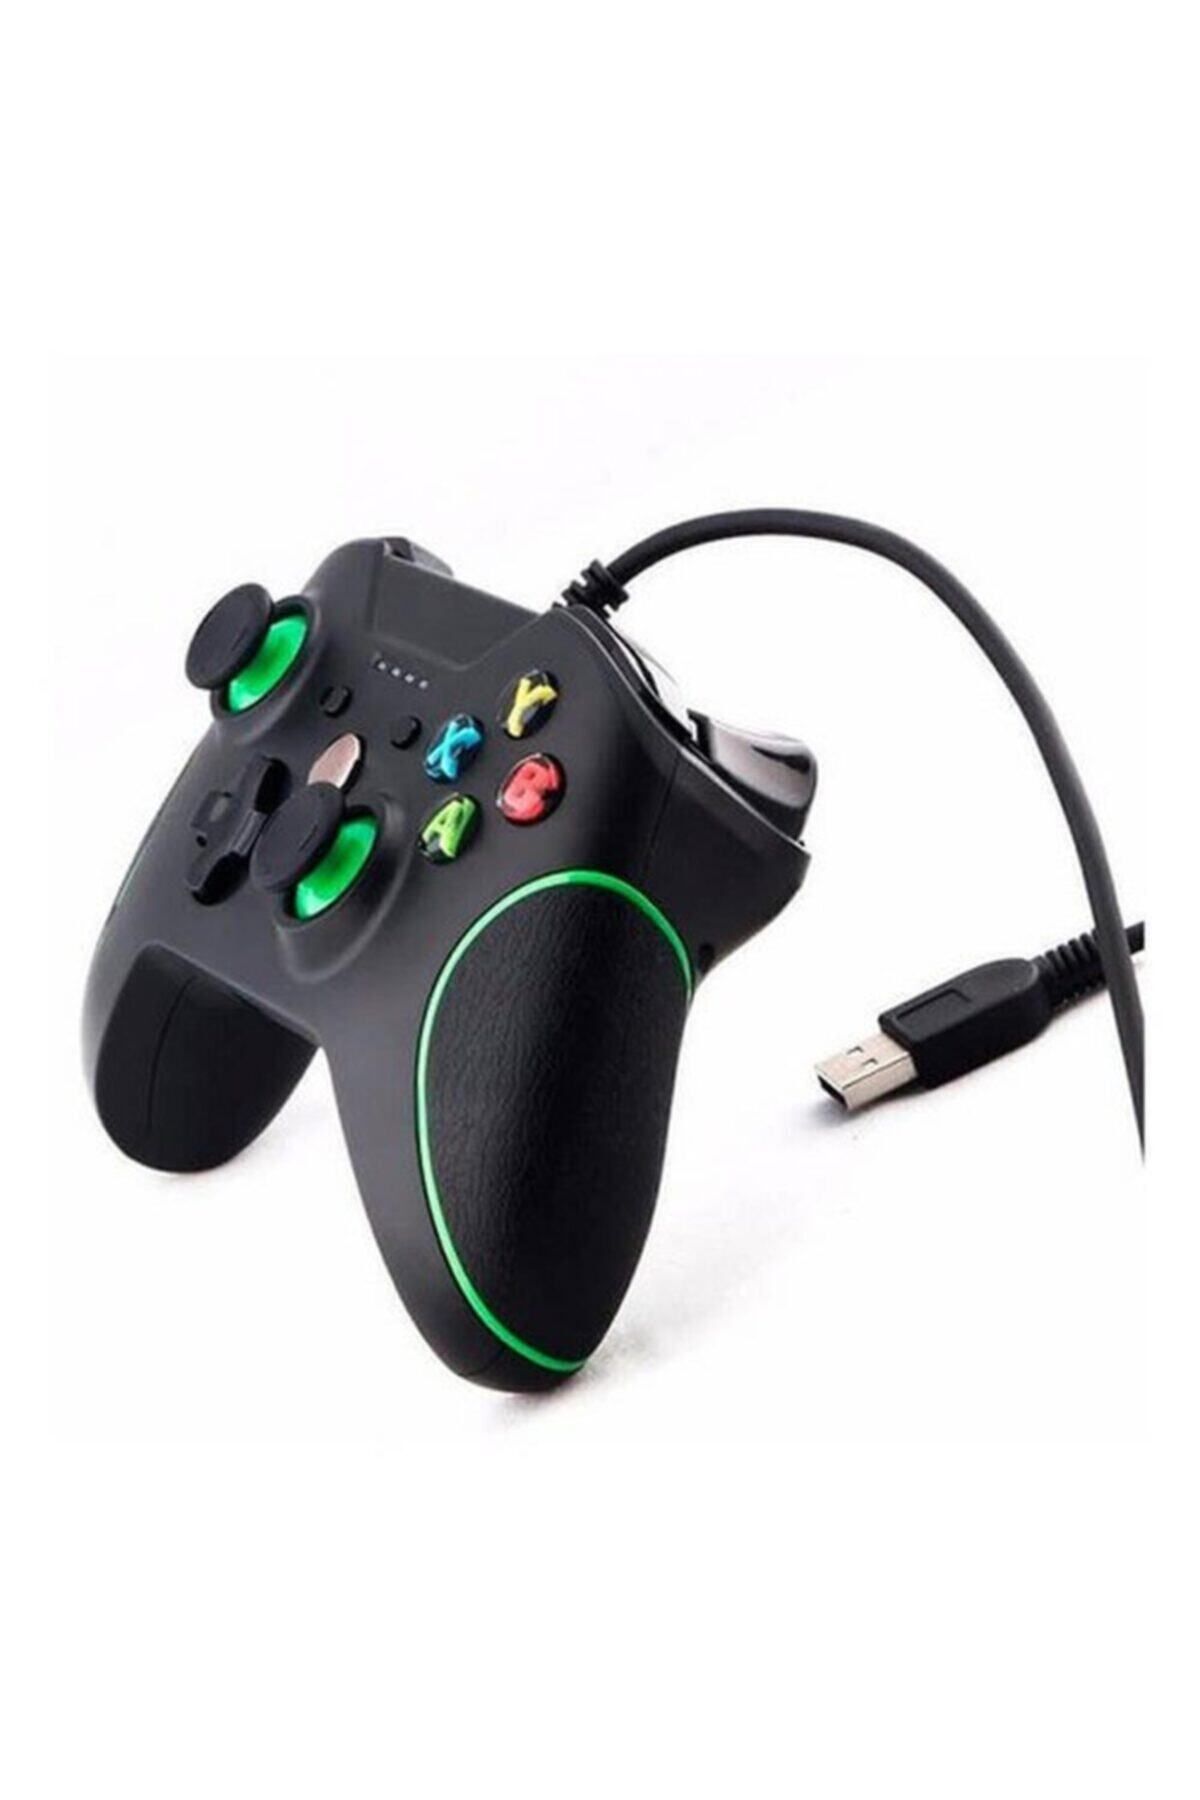 DNR Bilişim Xbox One Çift Titreşimli Pc-laptop Için Usb Kablolu Gamepad Oyun Denetleyicisi